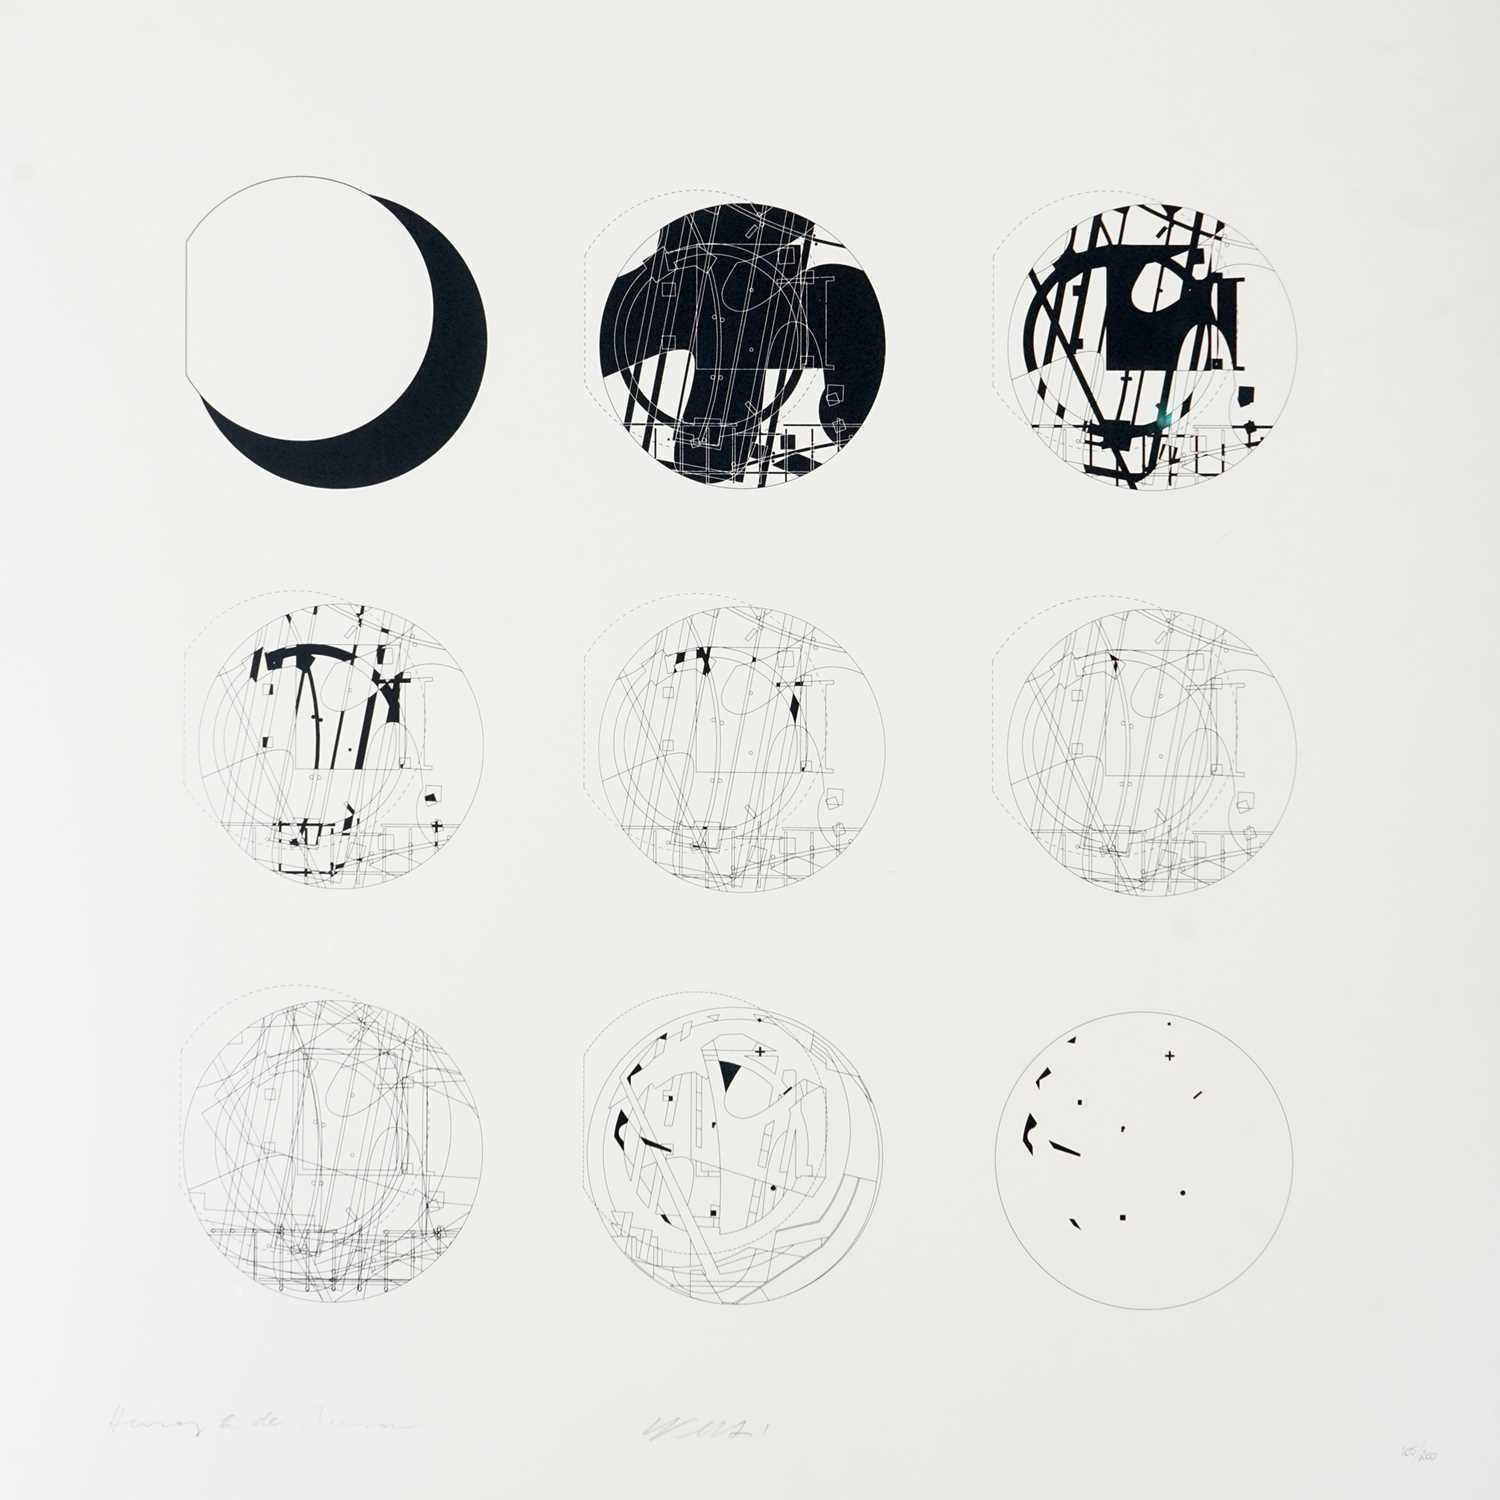 Lot 3 - Ai Weiwei & Herzog & de Meuron (Collaboration), 'Serpentine Gallery Pavilion', 2012